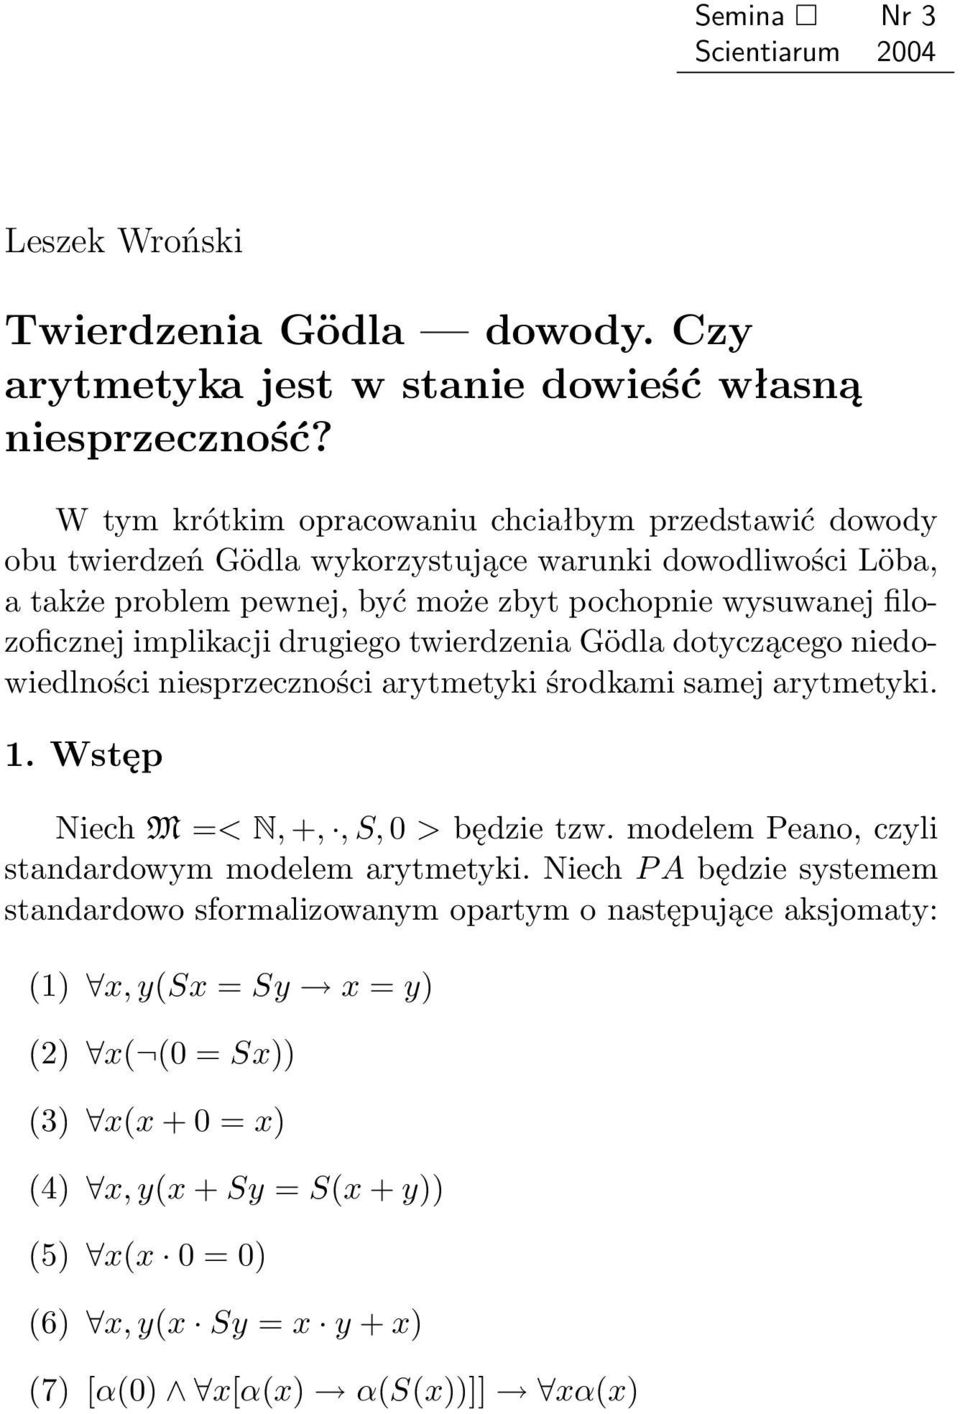 implikacji drugiego twierdzenia Gödla dotyczącego niedowiedlności niesprzeczności arytmetyki środkami samej arytmetyki. 1. Wstęp Niech M =< N, +,, S, 0 > będzie tzw.